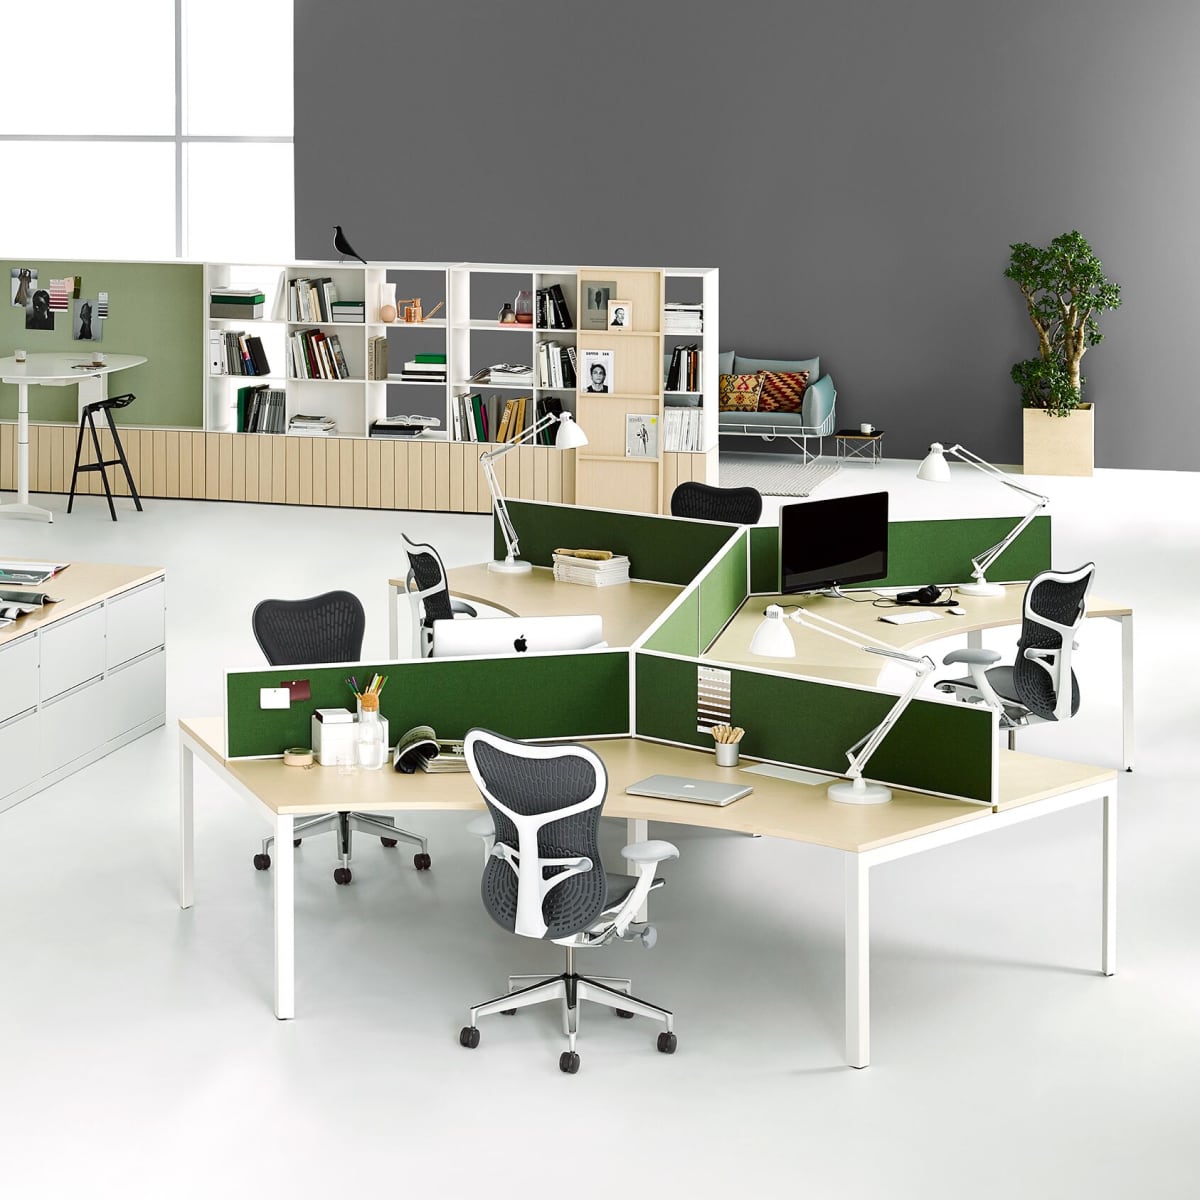 Arbeitsplätze mit grünen Sichtschutzschirmen und dunkelblauen Mirra 2-Bürostühlen.